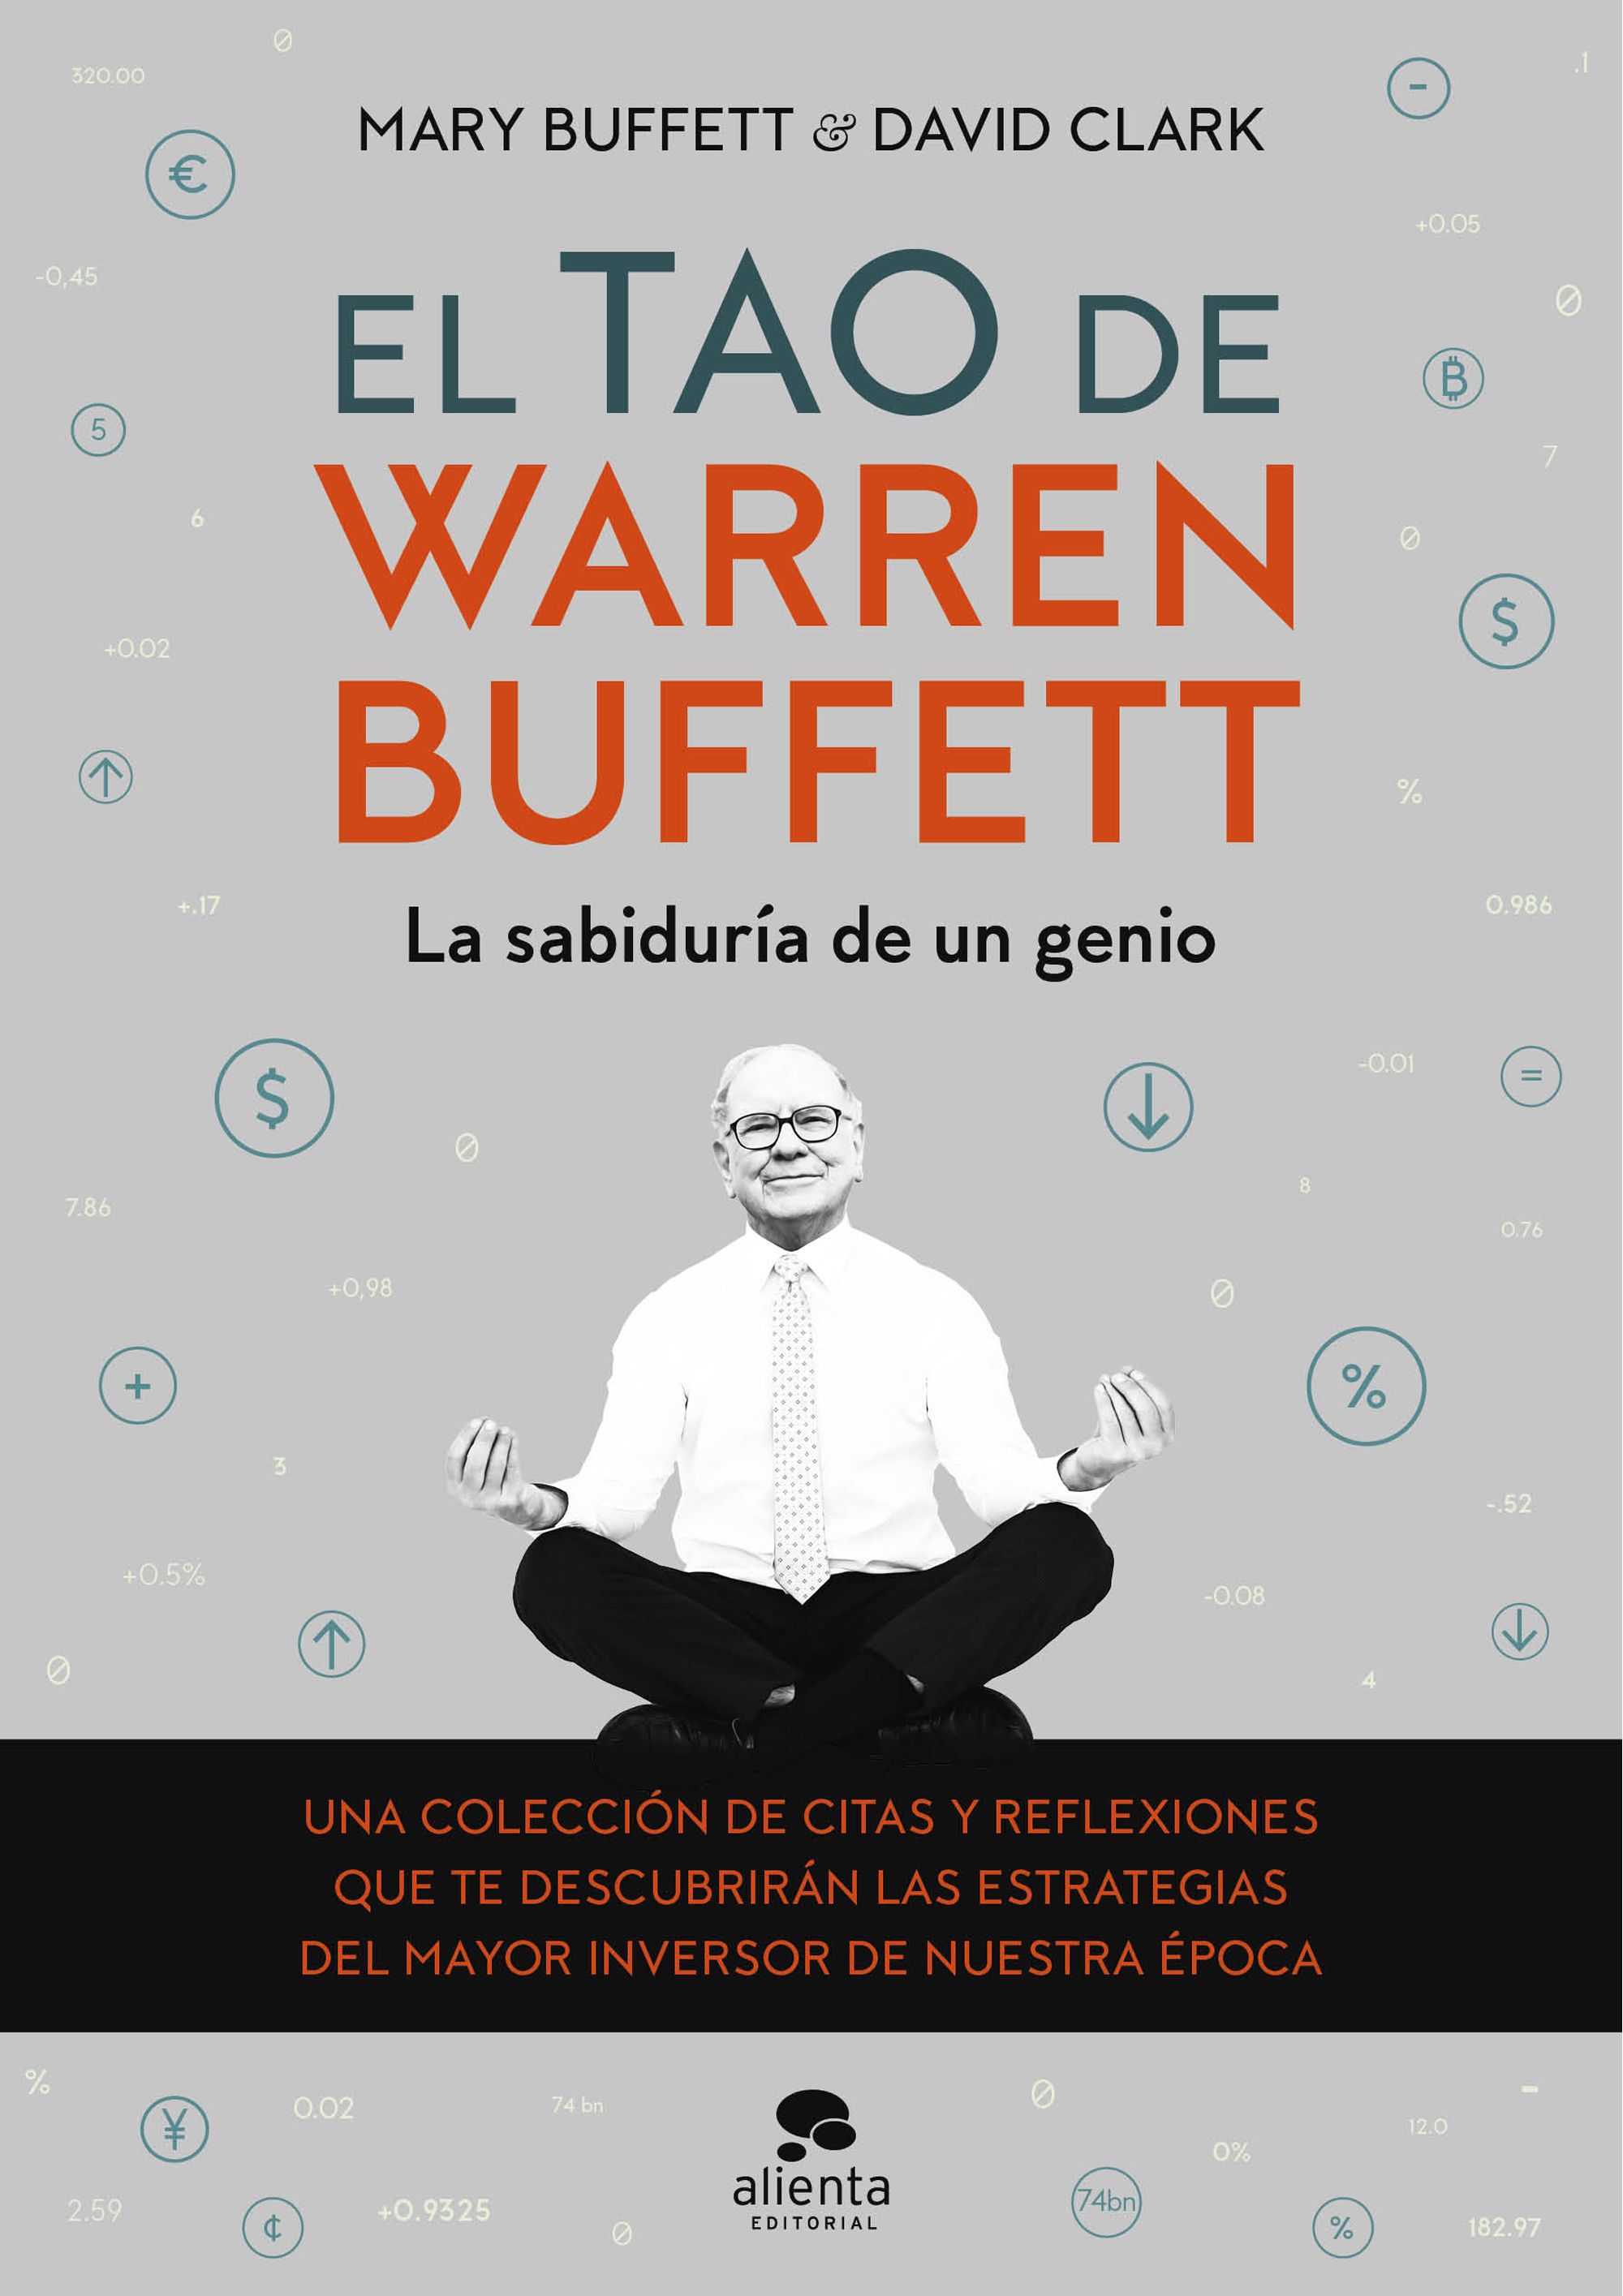 El tao de Warren Buffett